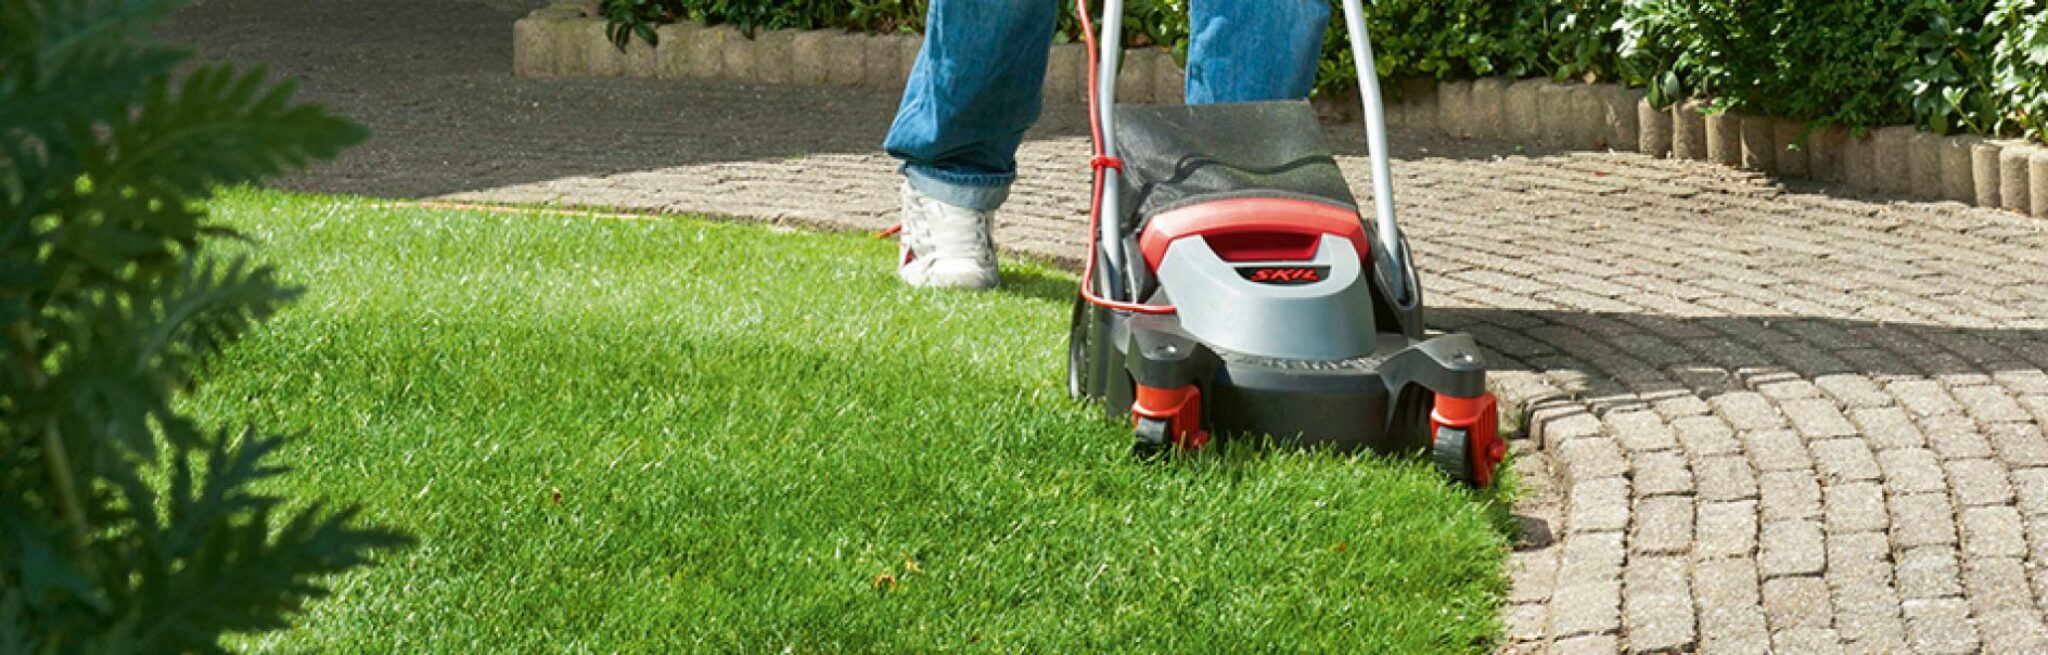 13 trucs et astuces pratiques pour tondre la pelouse que vous pouvez utiliser dès maintenant